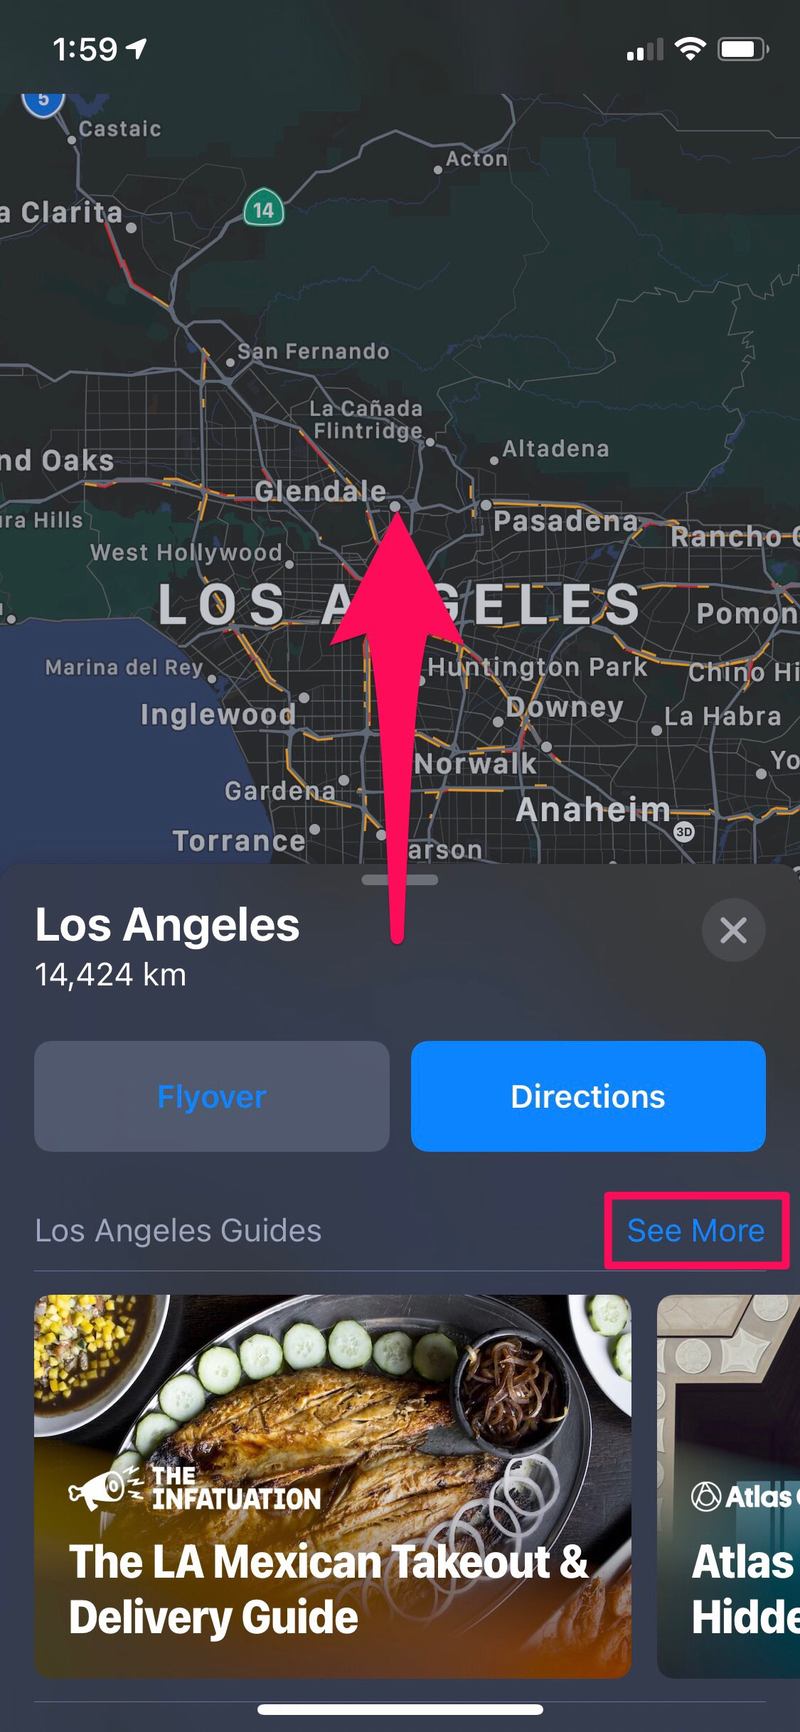 如何在 iPhone 上使用 Apple 地图中的指南